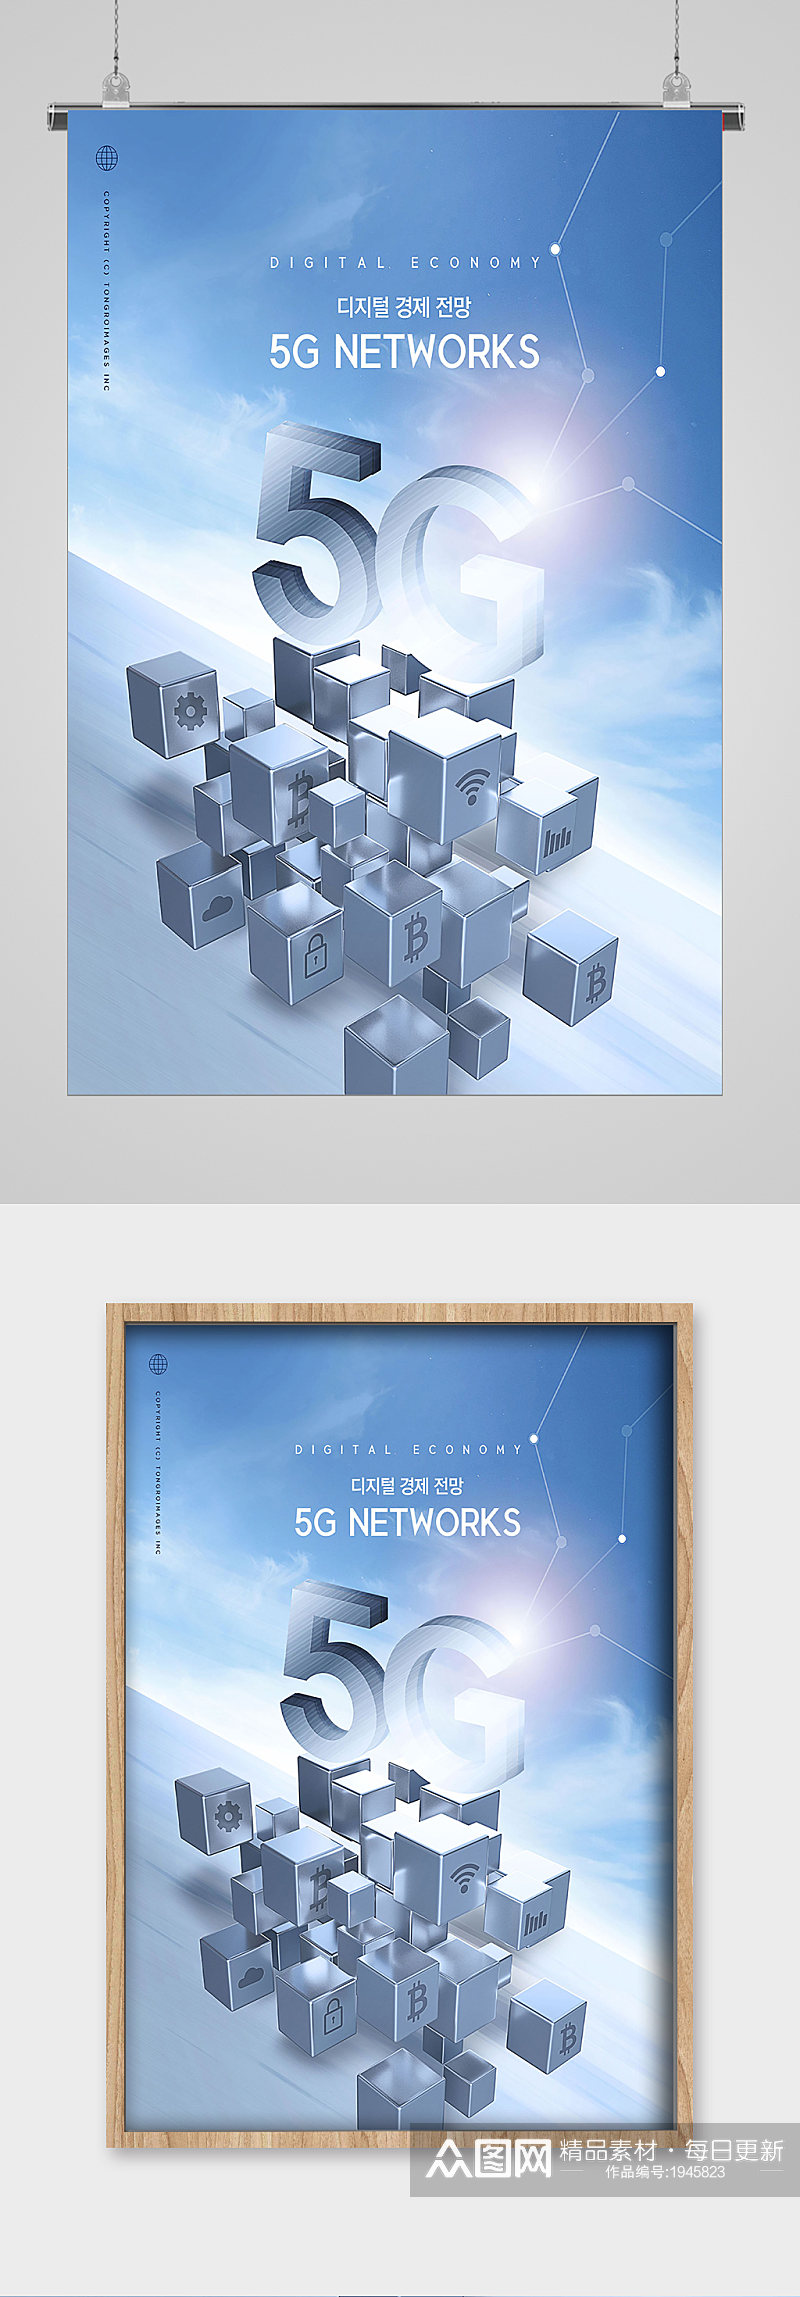 5G时代梦想未来宣传海报素材